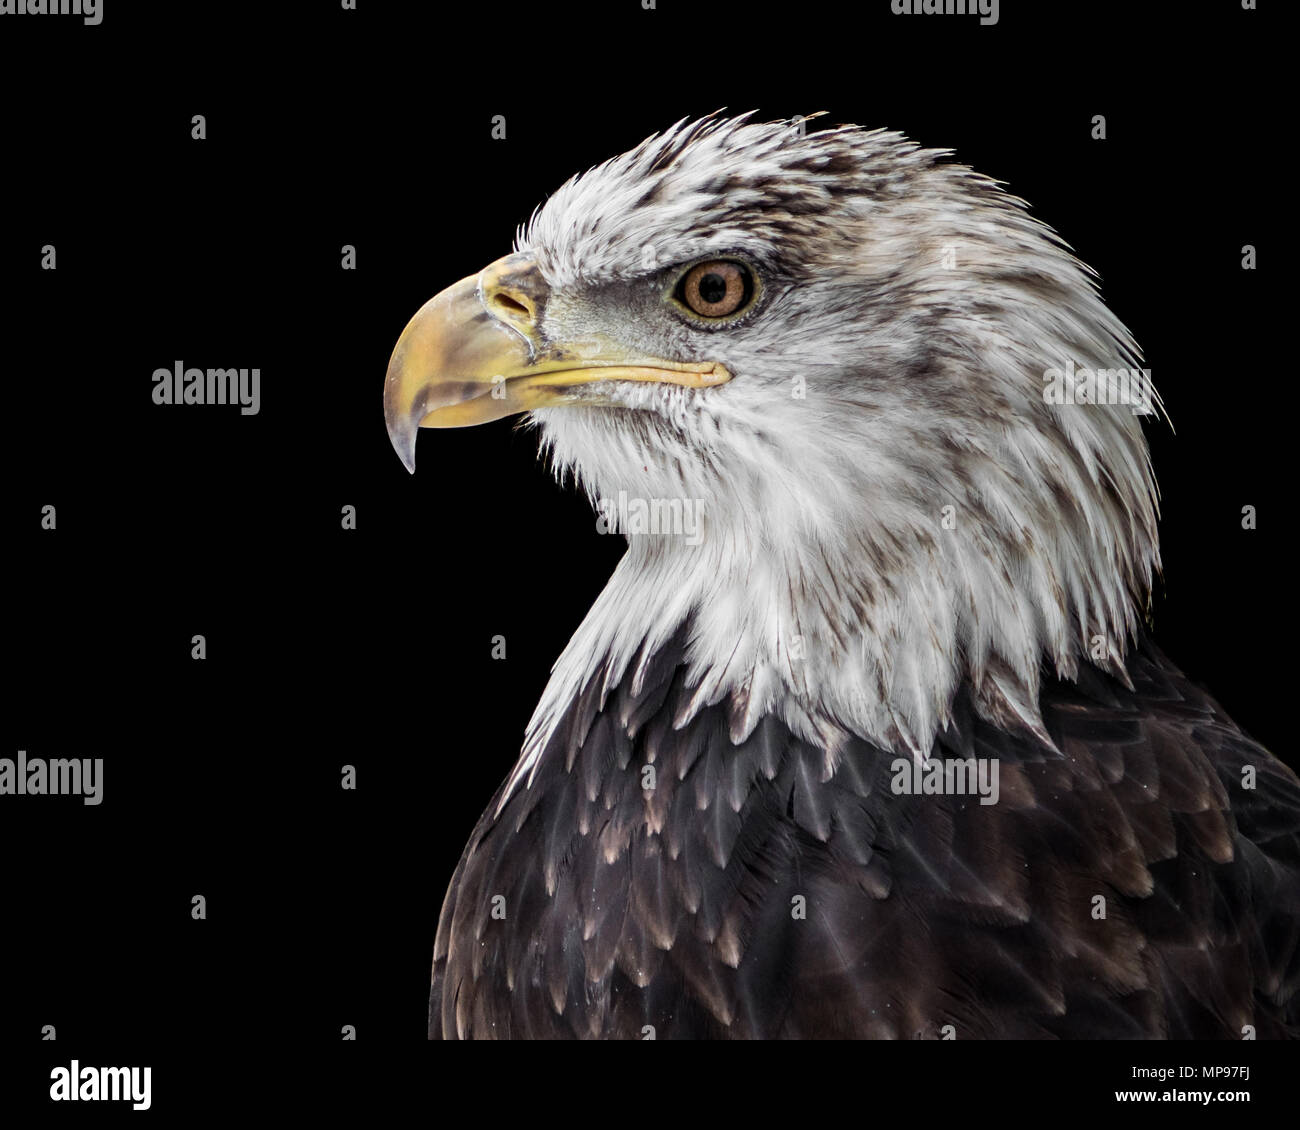 Profile Portrait of an Juvenile Bald Eagle Against a Black Background Stock Photo